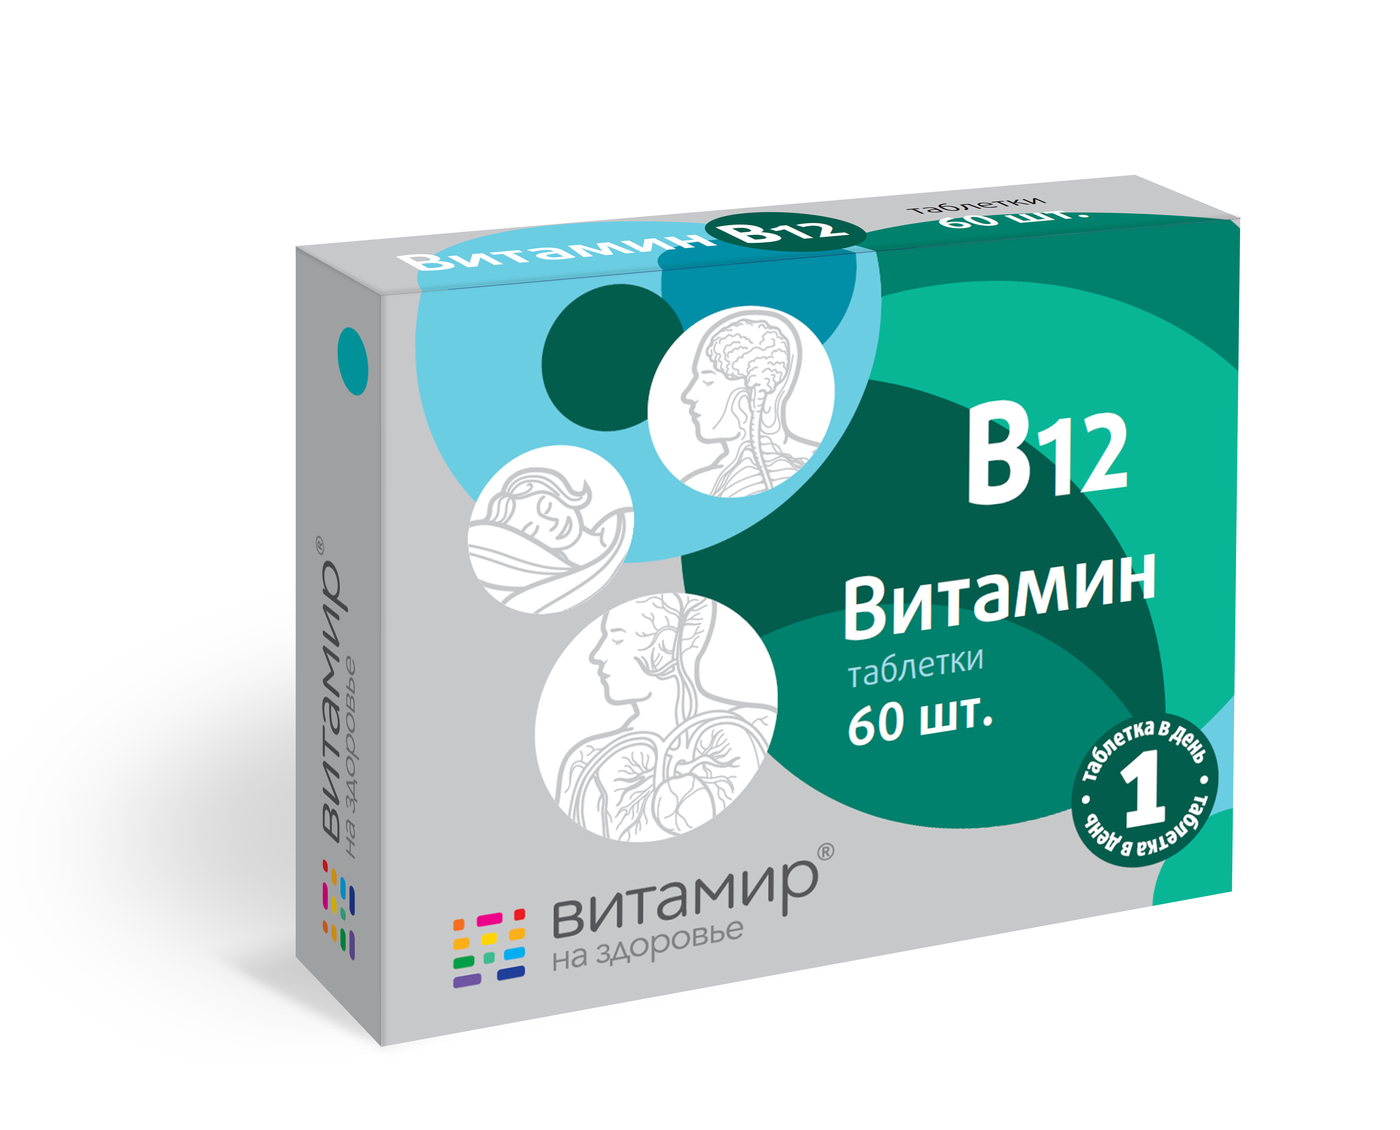 Витамин B12 Витамир – Telegraph